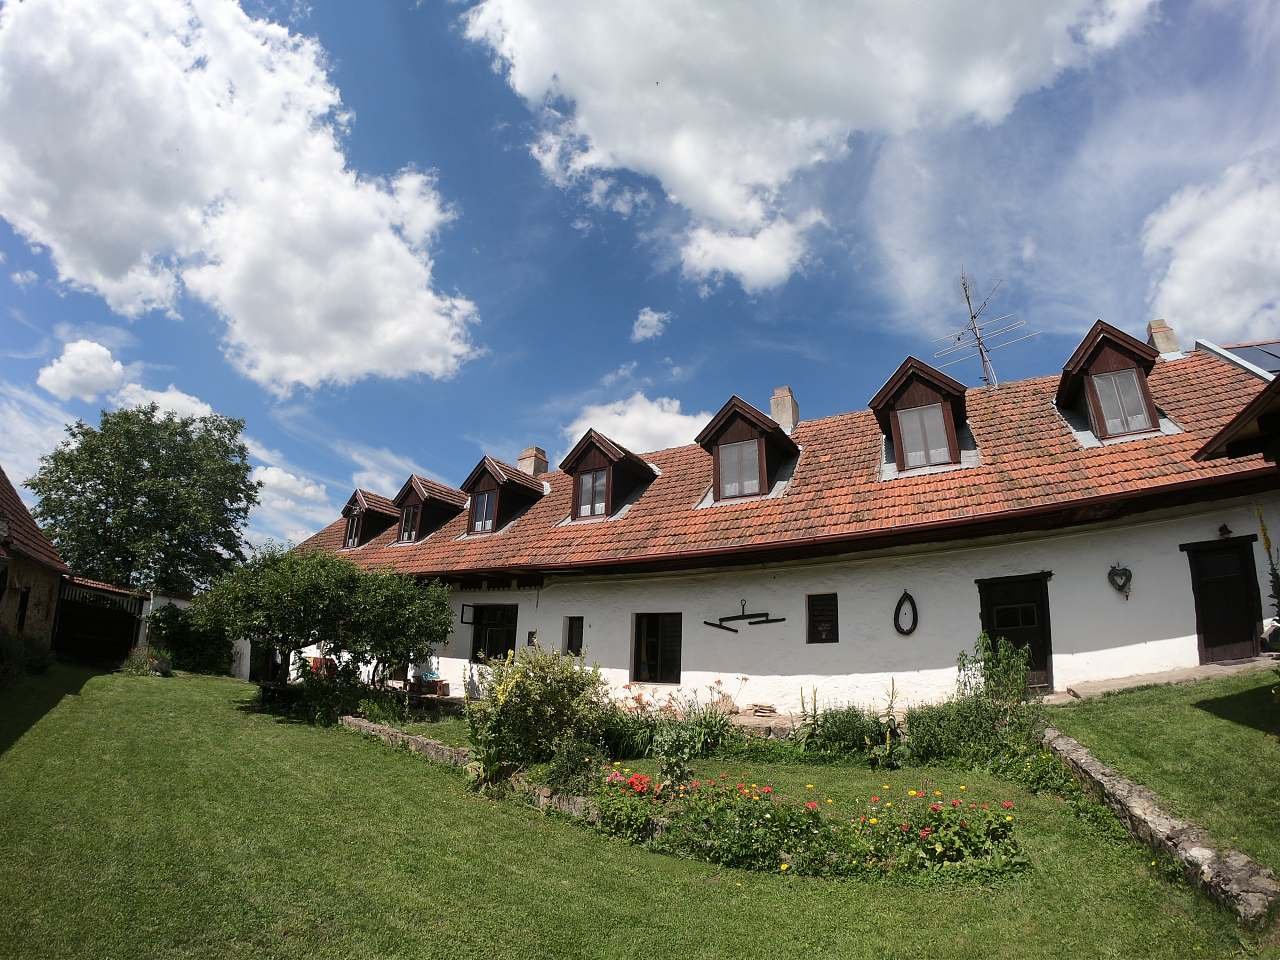 Vopálk's cottage - courtyard